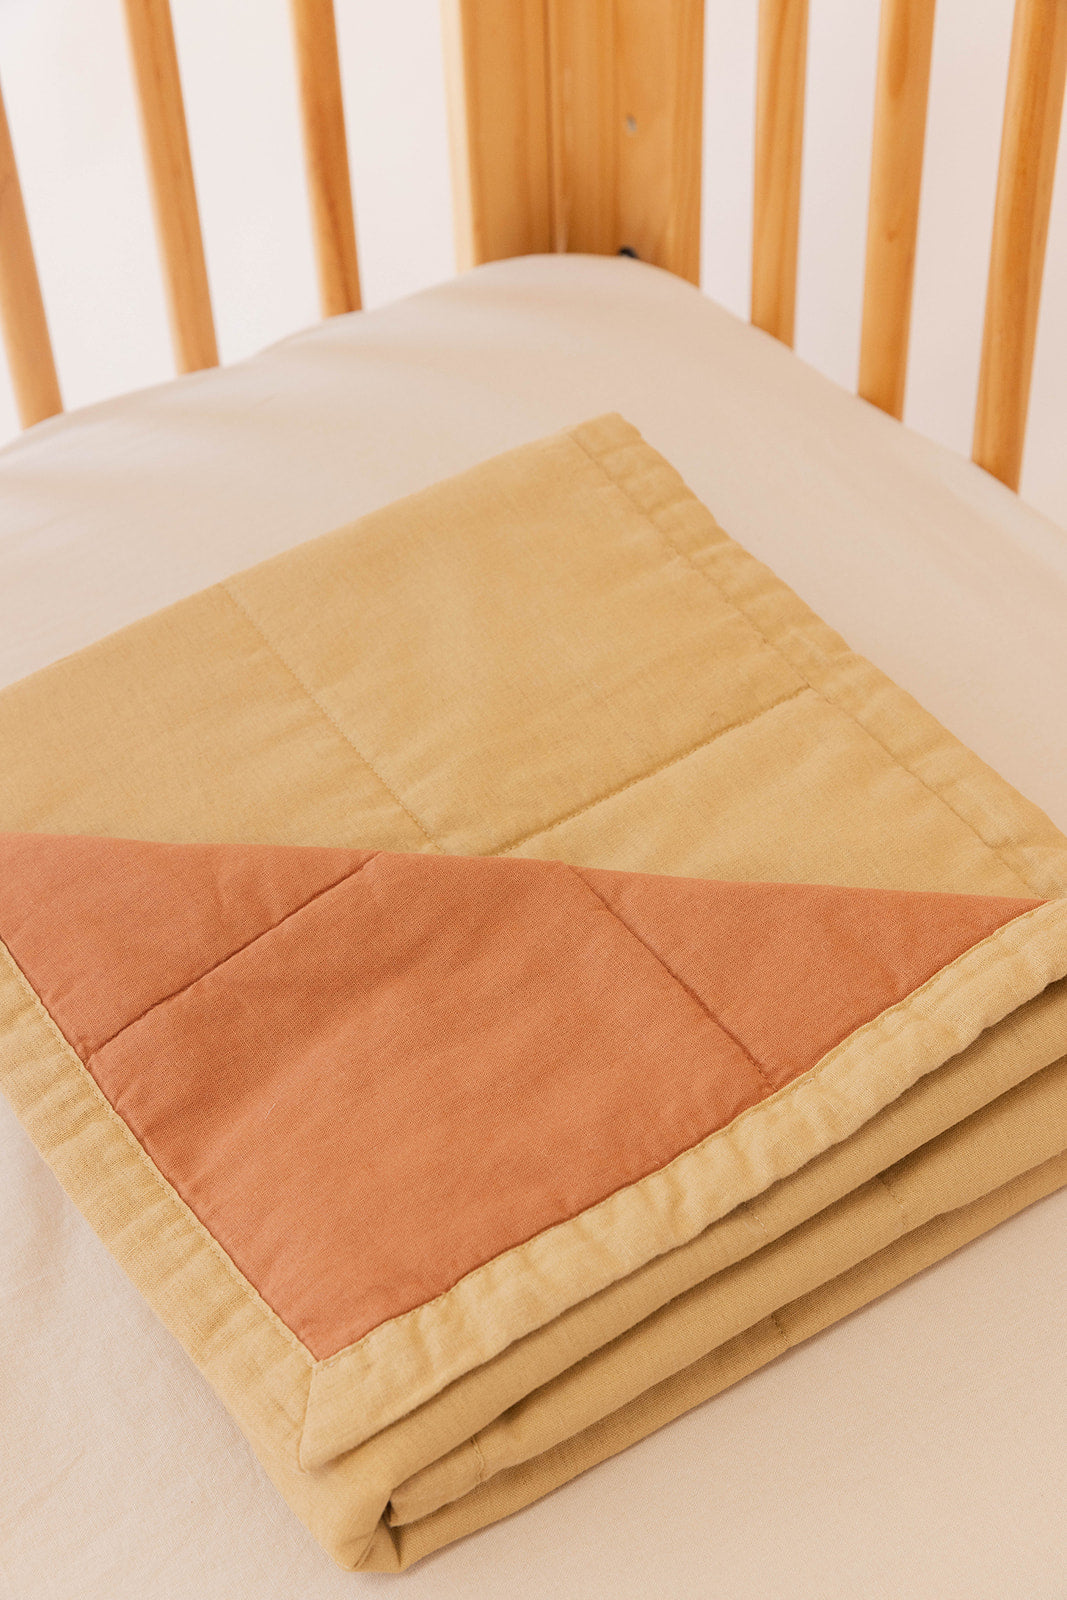 Verdin/Merganser - Linen Quilted Blanket